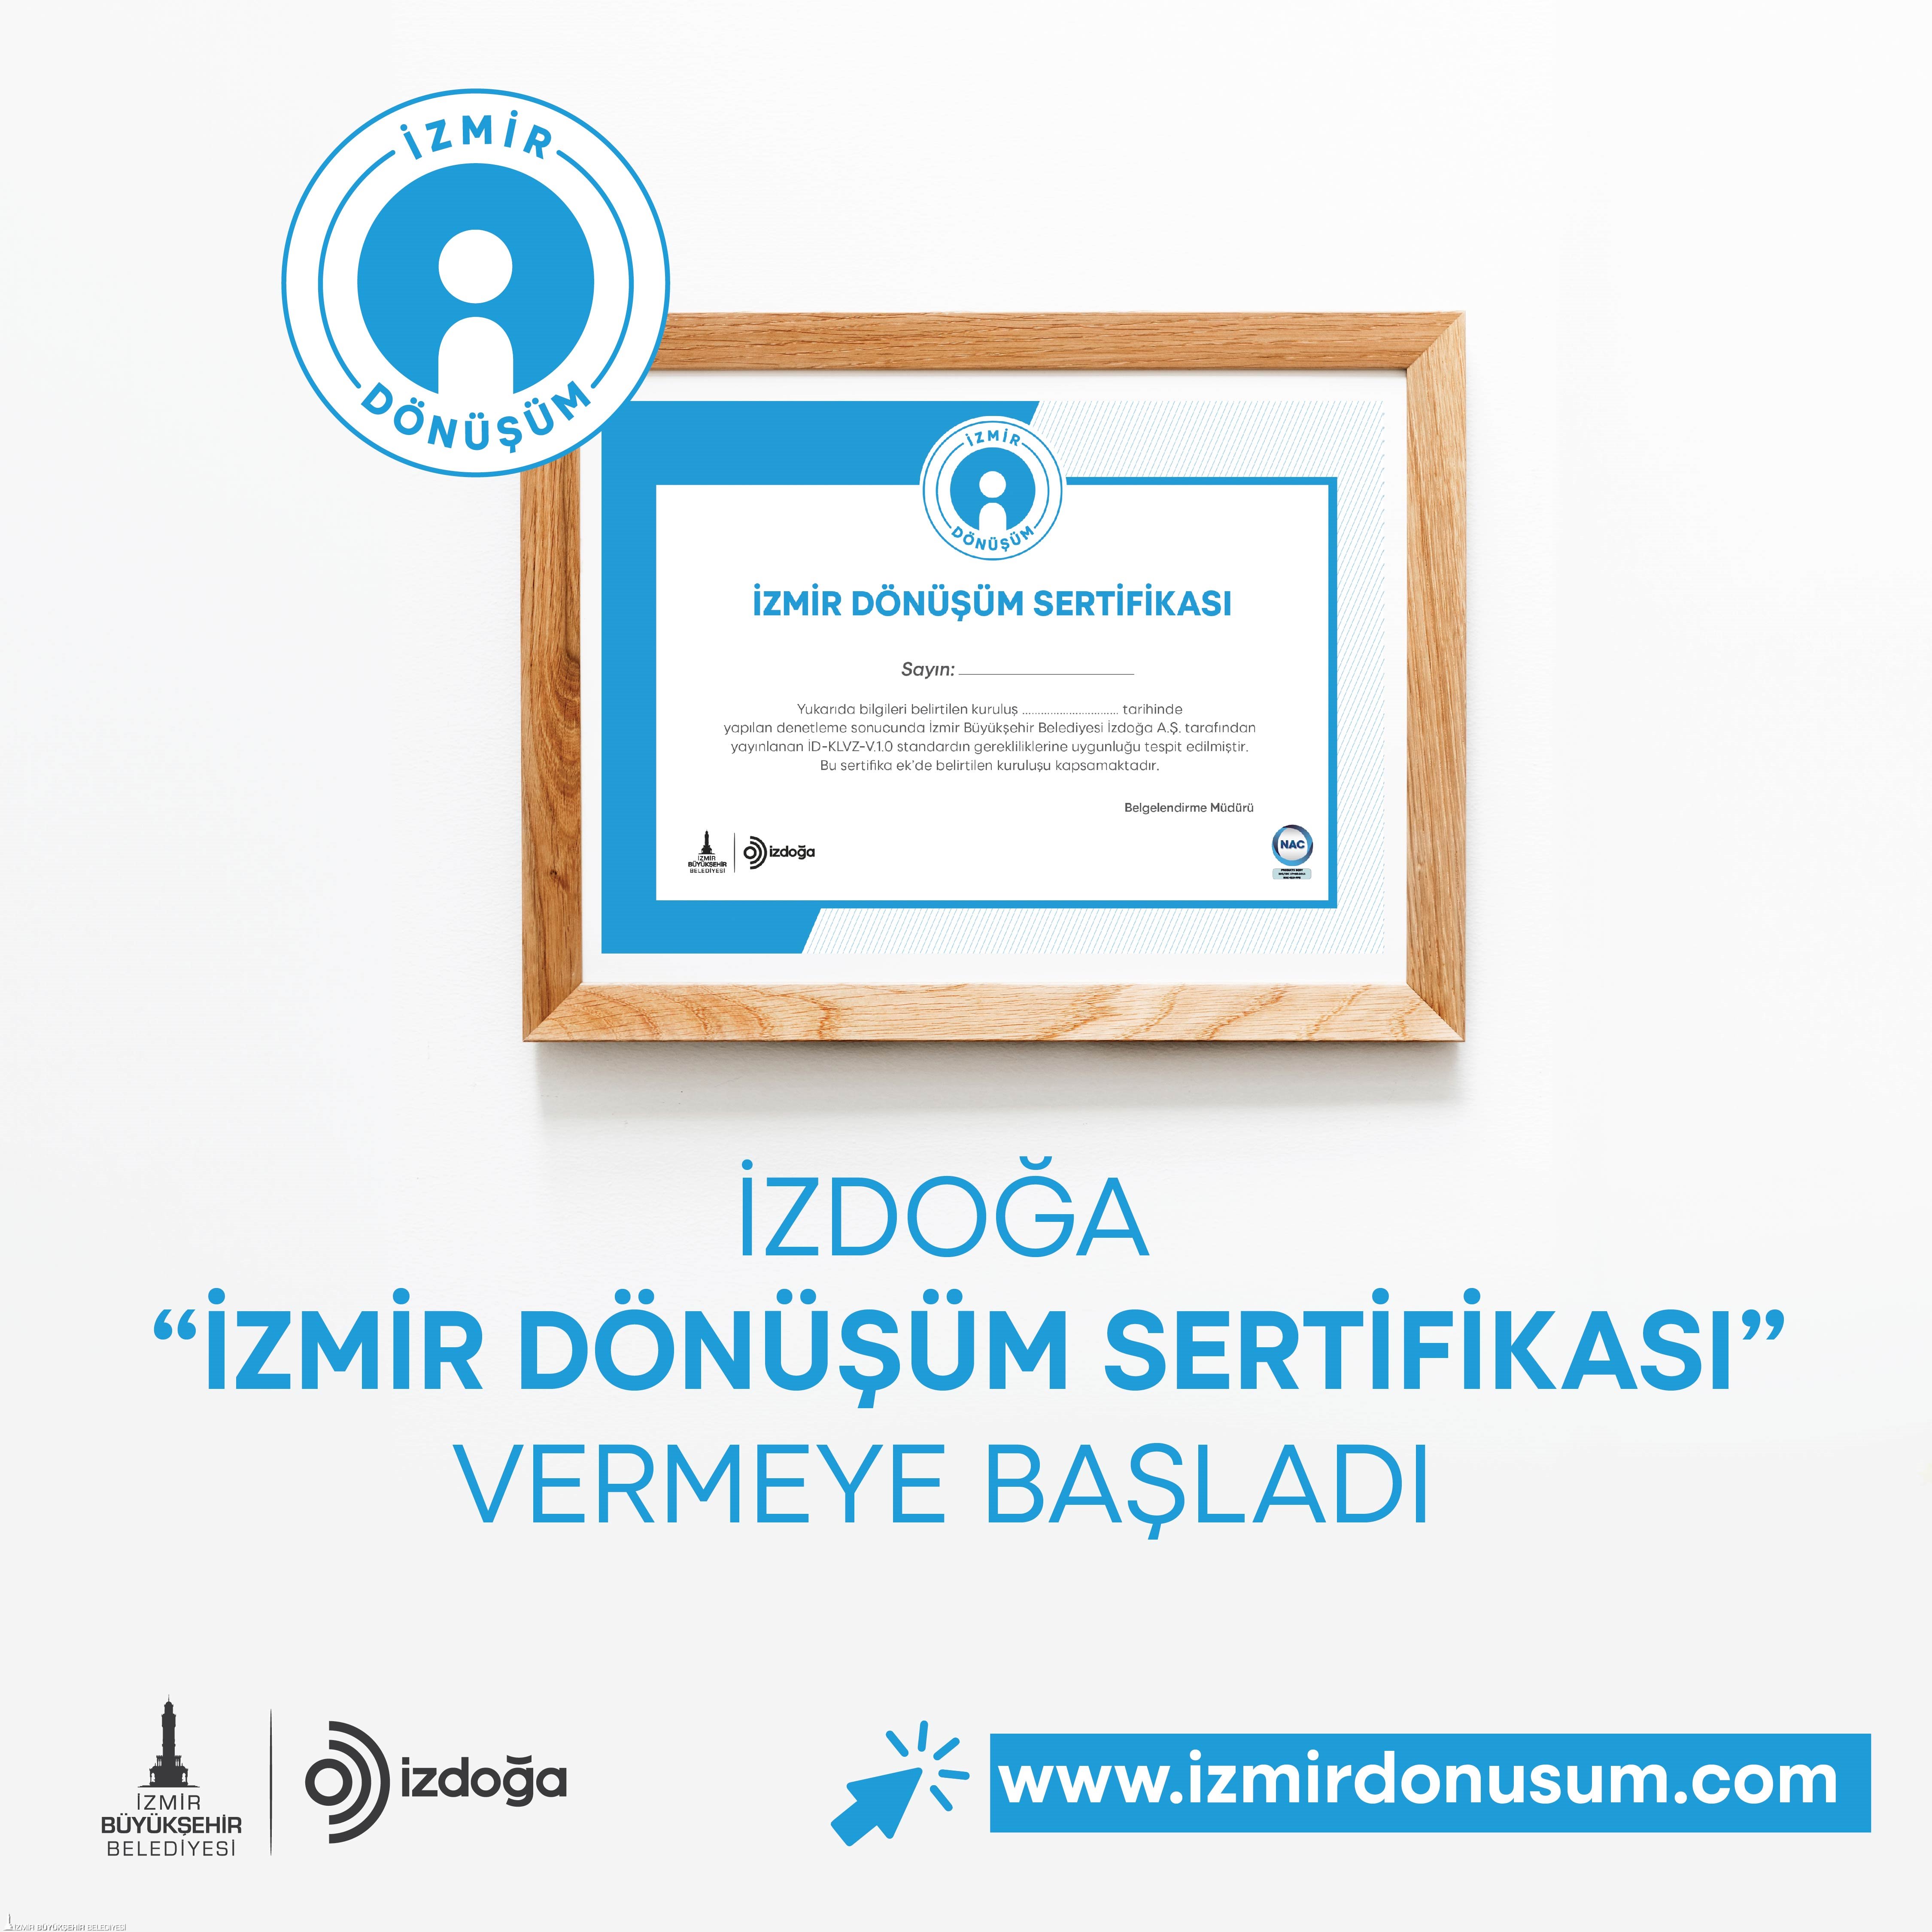 İzmir Büyükşehir Belediyesi şirketi İzDoğa “İzmir Dönüşüm Sertifikası” vermeye başlıyor